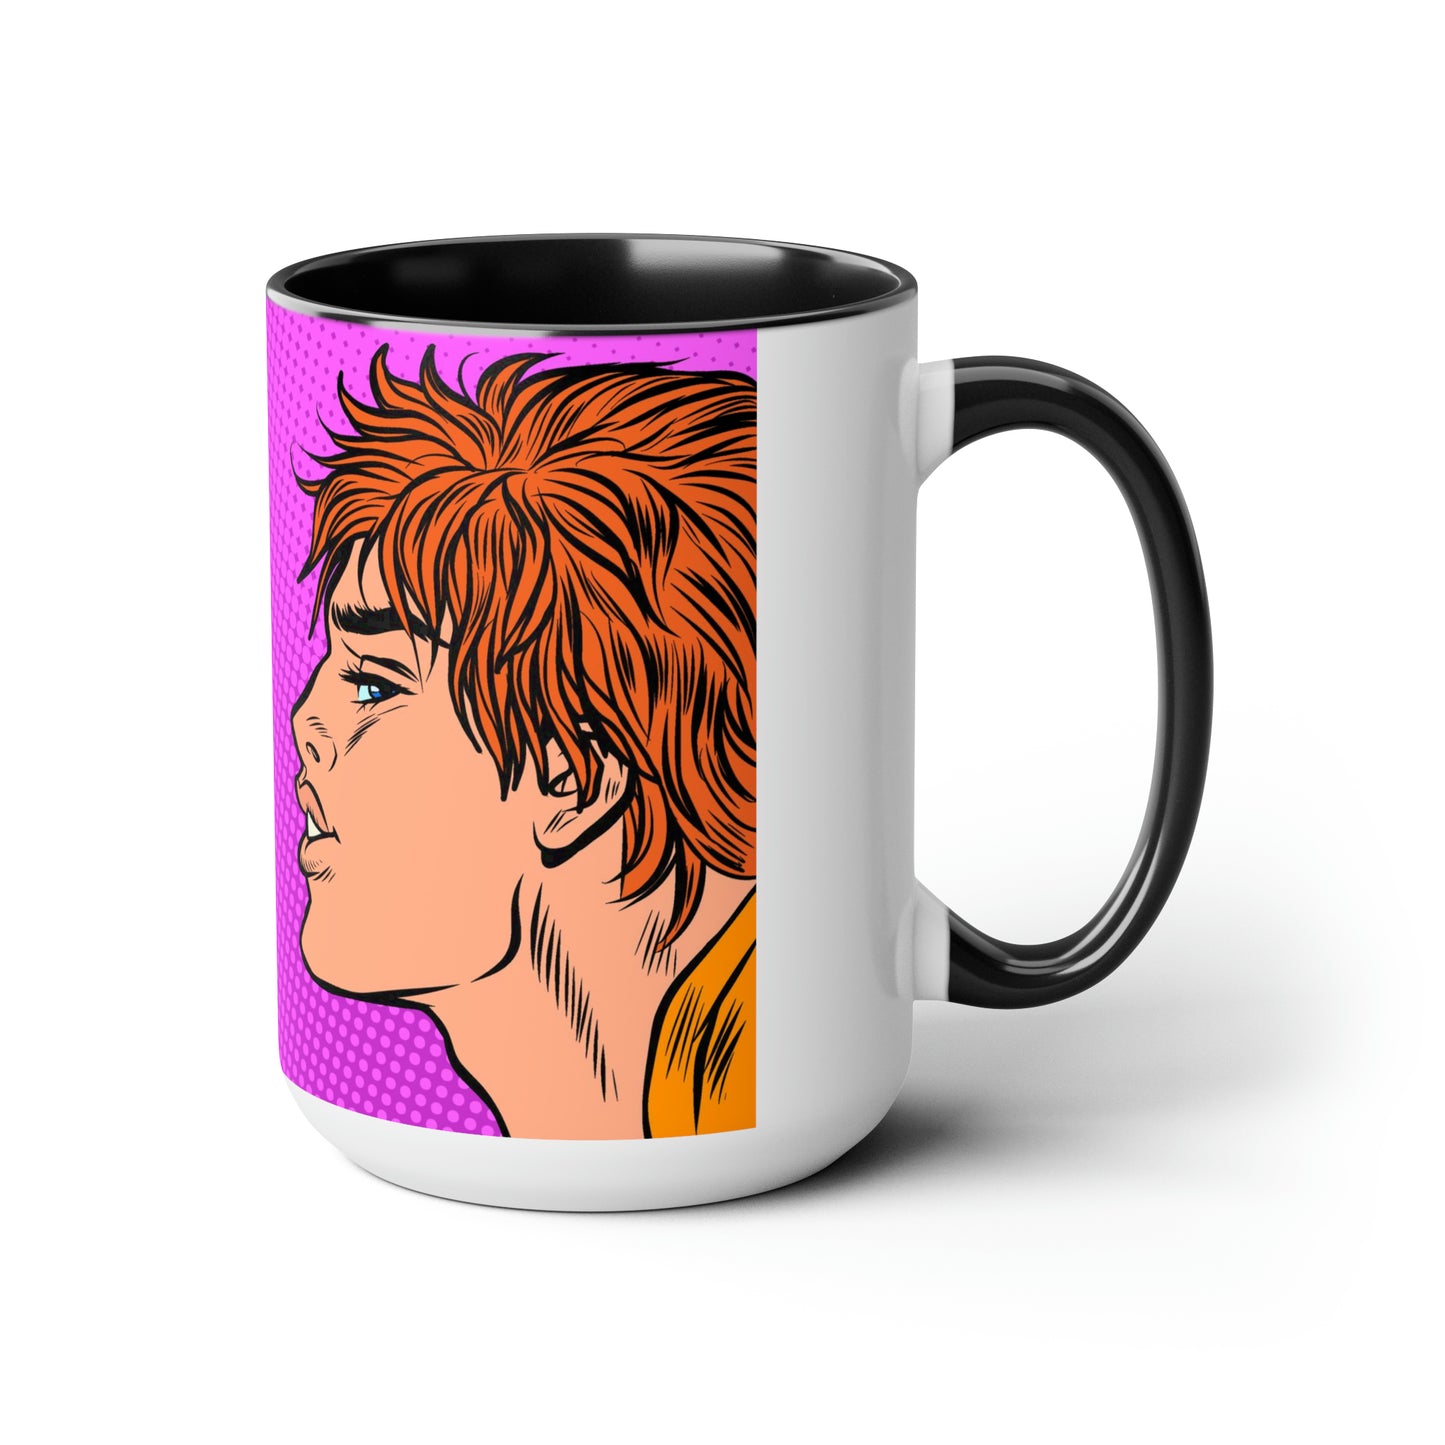 Two-Tone Coffee Mugs, 15oz - Gay Pop Art Kiss